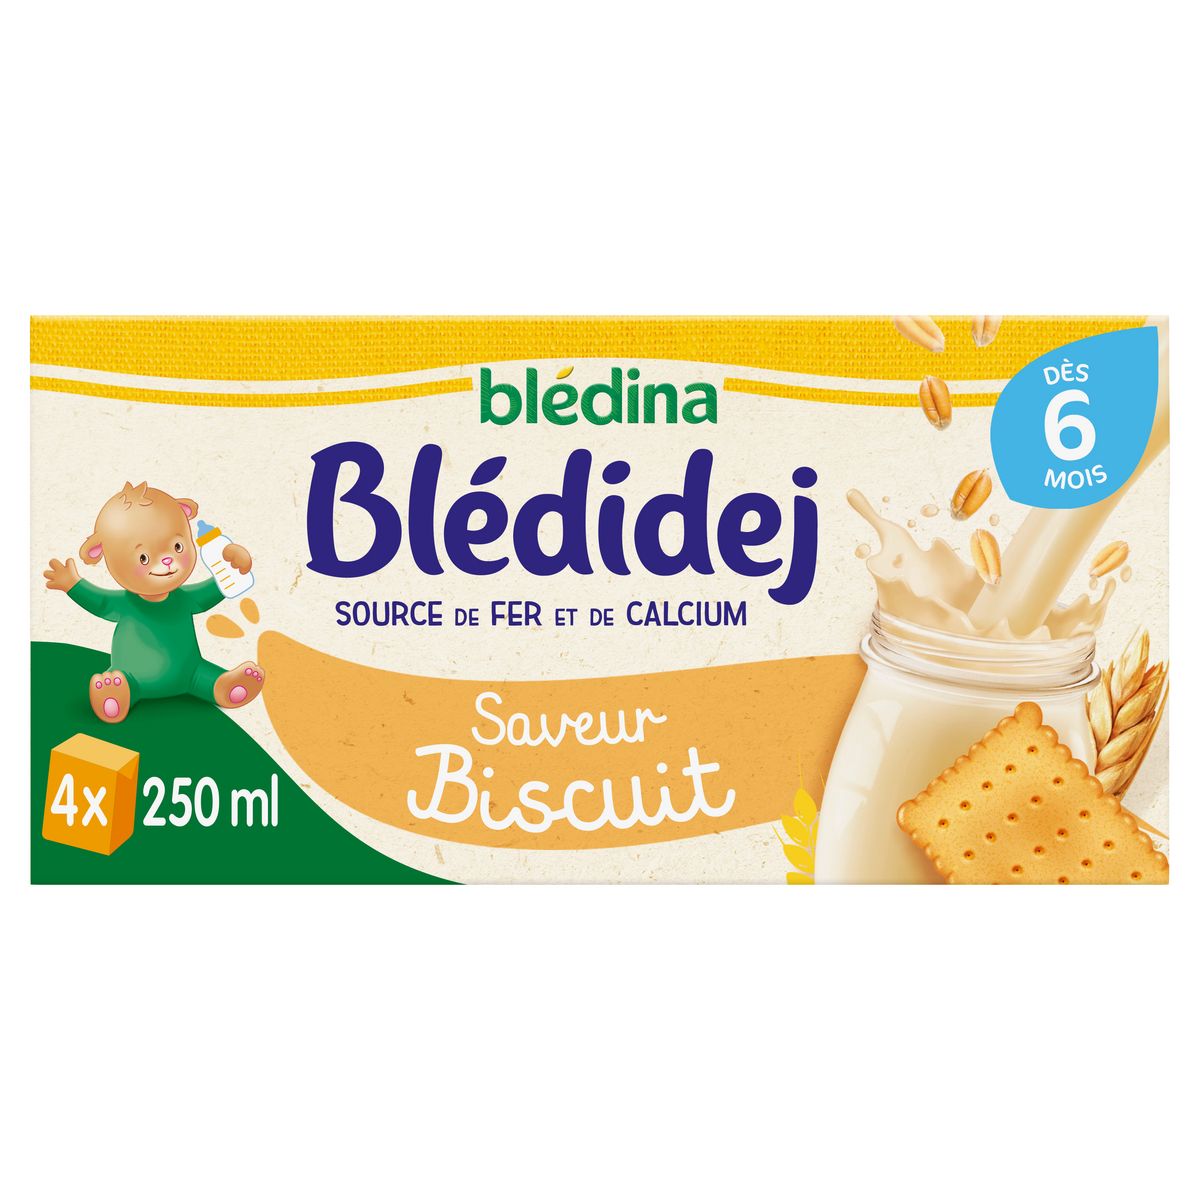 BLEDINA Blédidej céréales lactées saveur biscuitée dès 6 mois 4x250ml